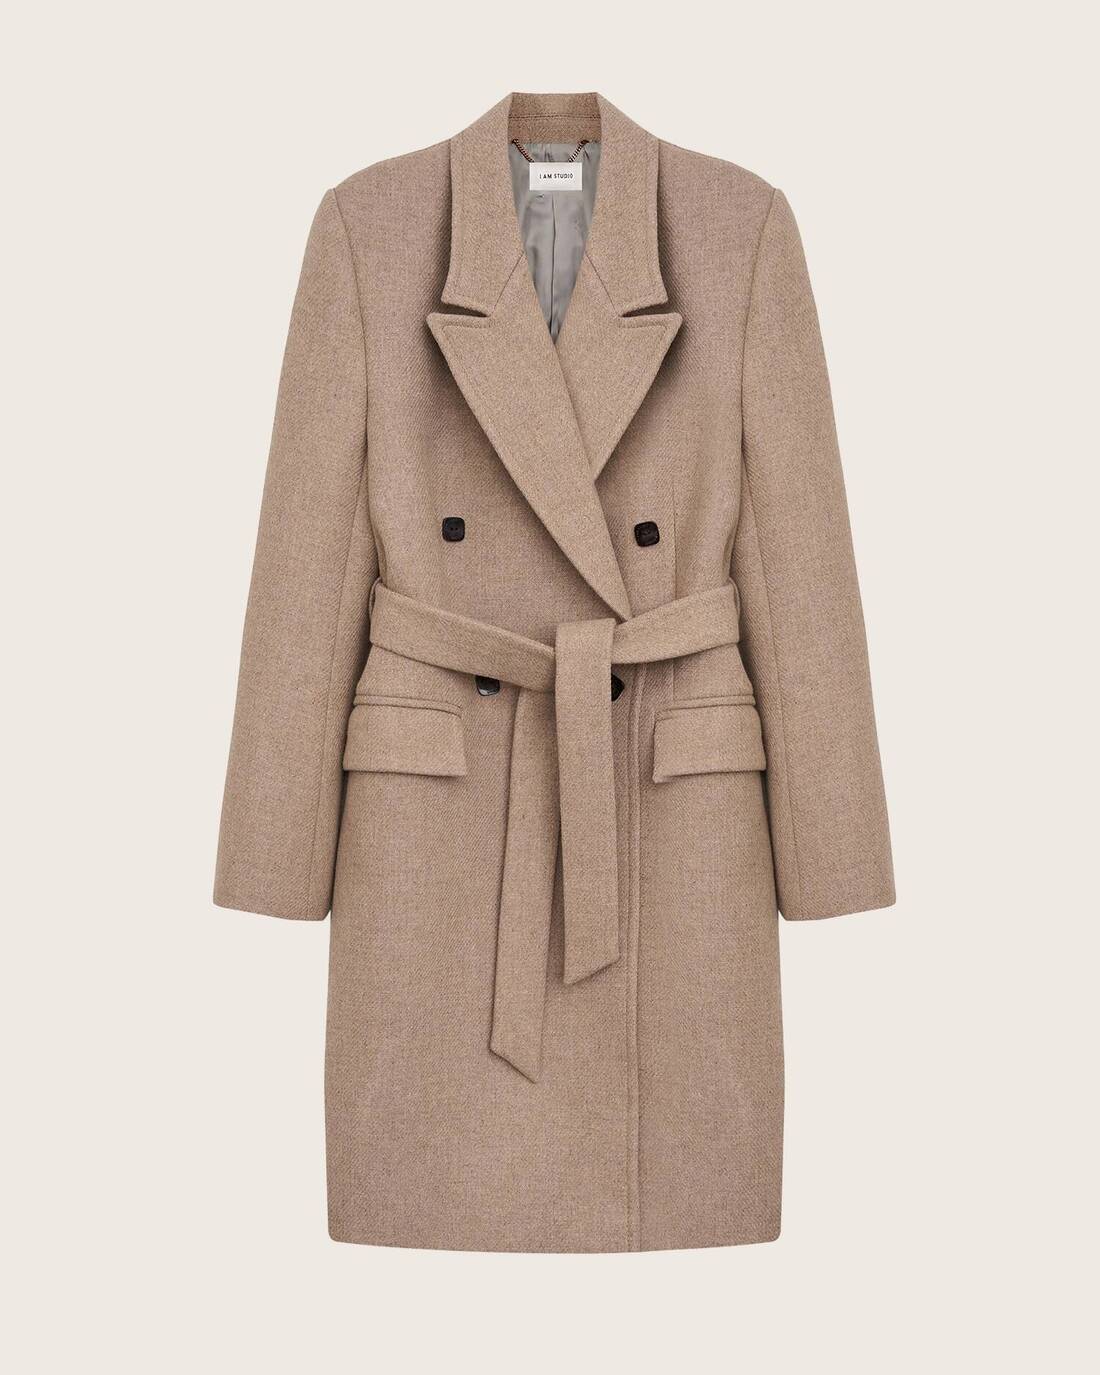 Structured short coat